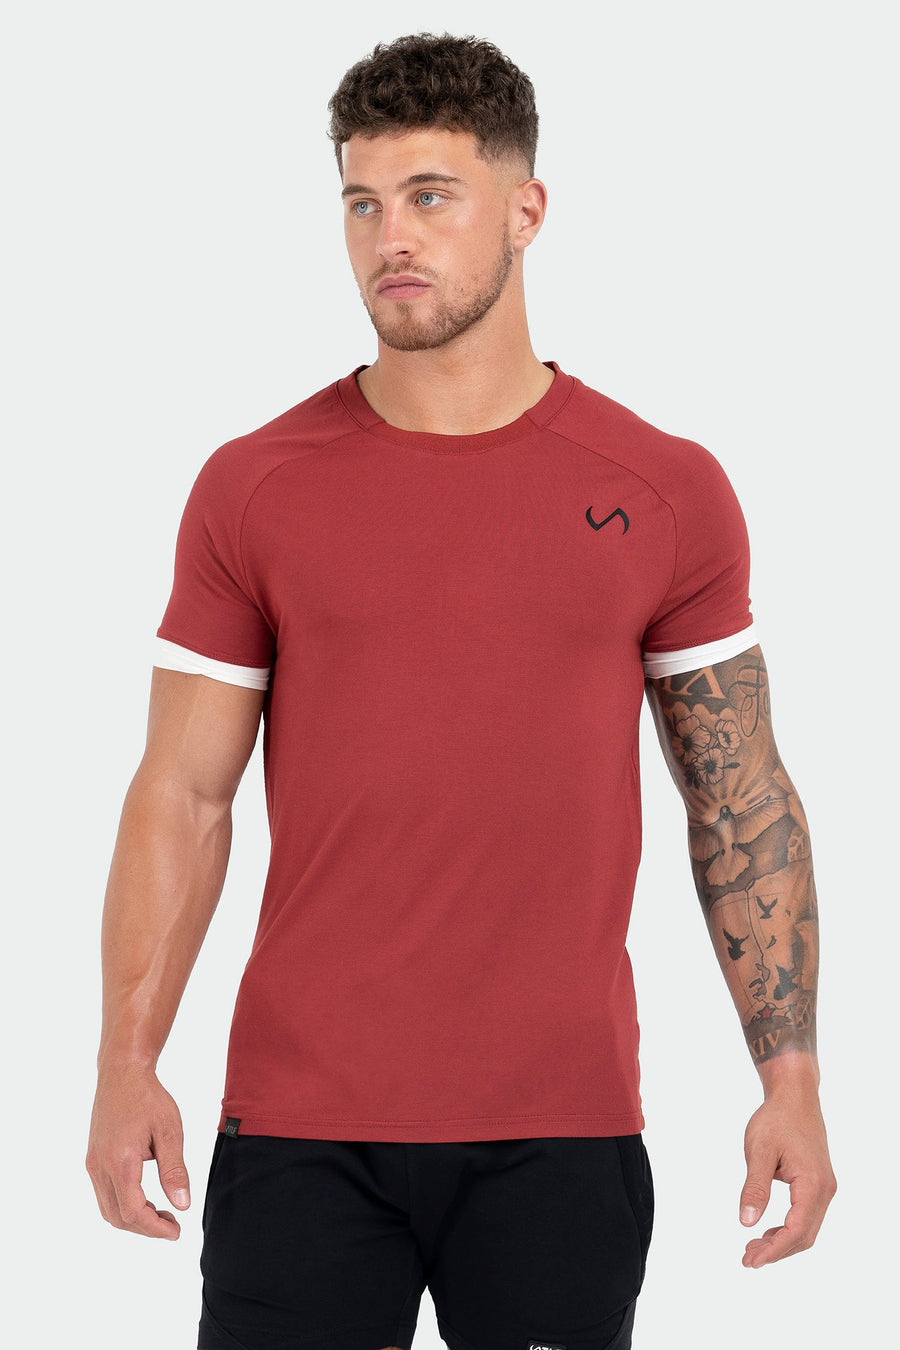 TLF Air-Flex Classic Tee - Mens Raglan Shirt - Red - 1